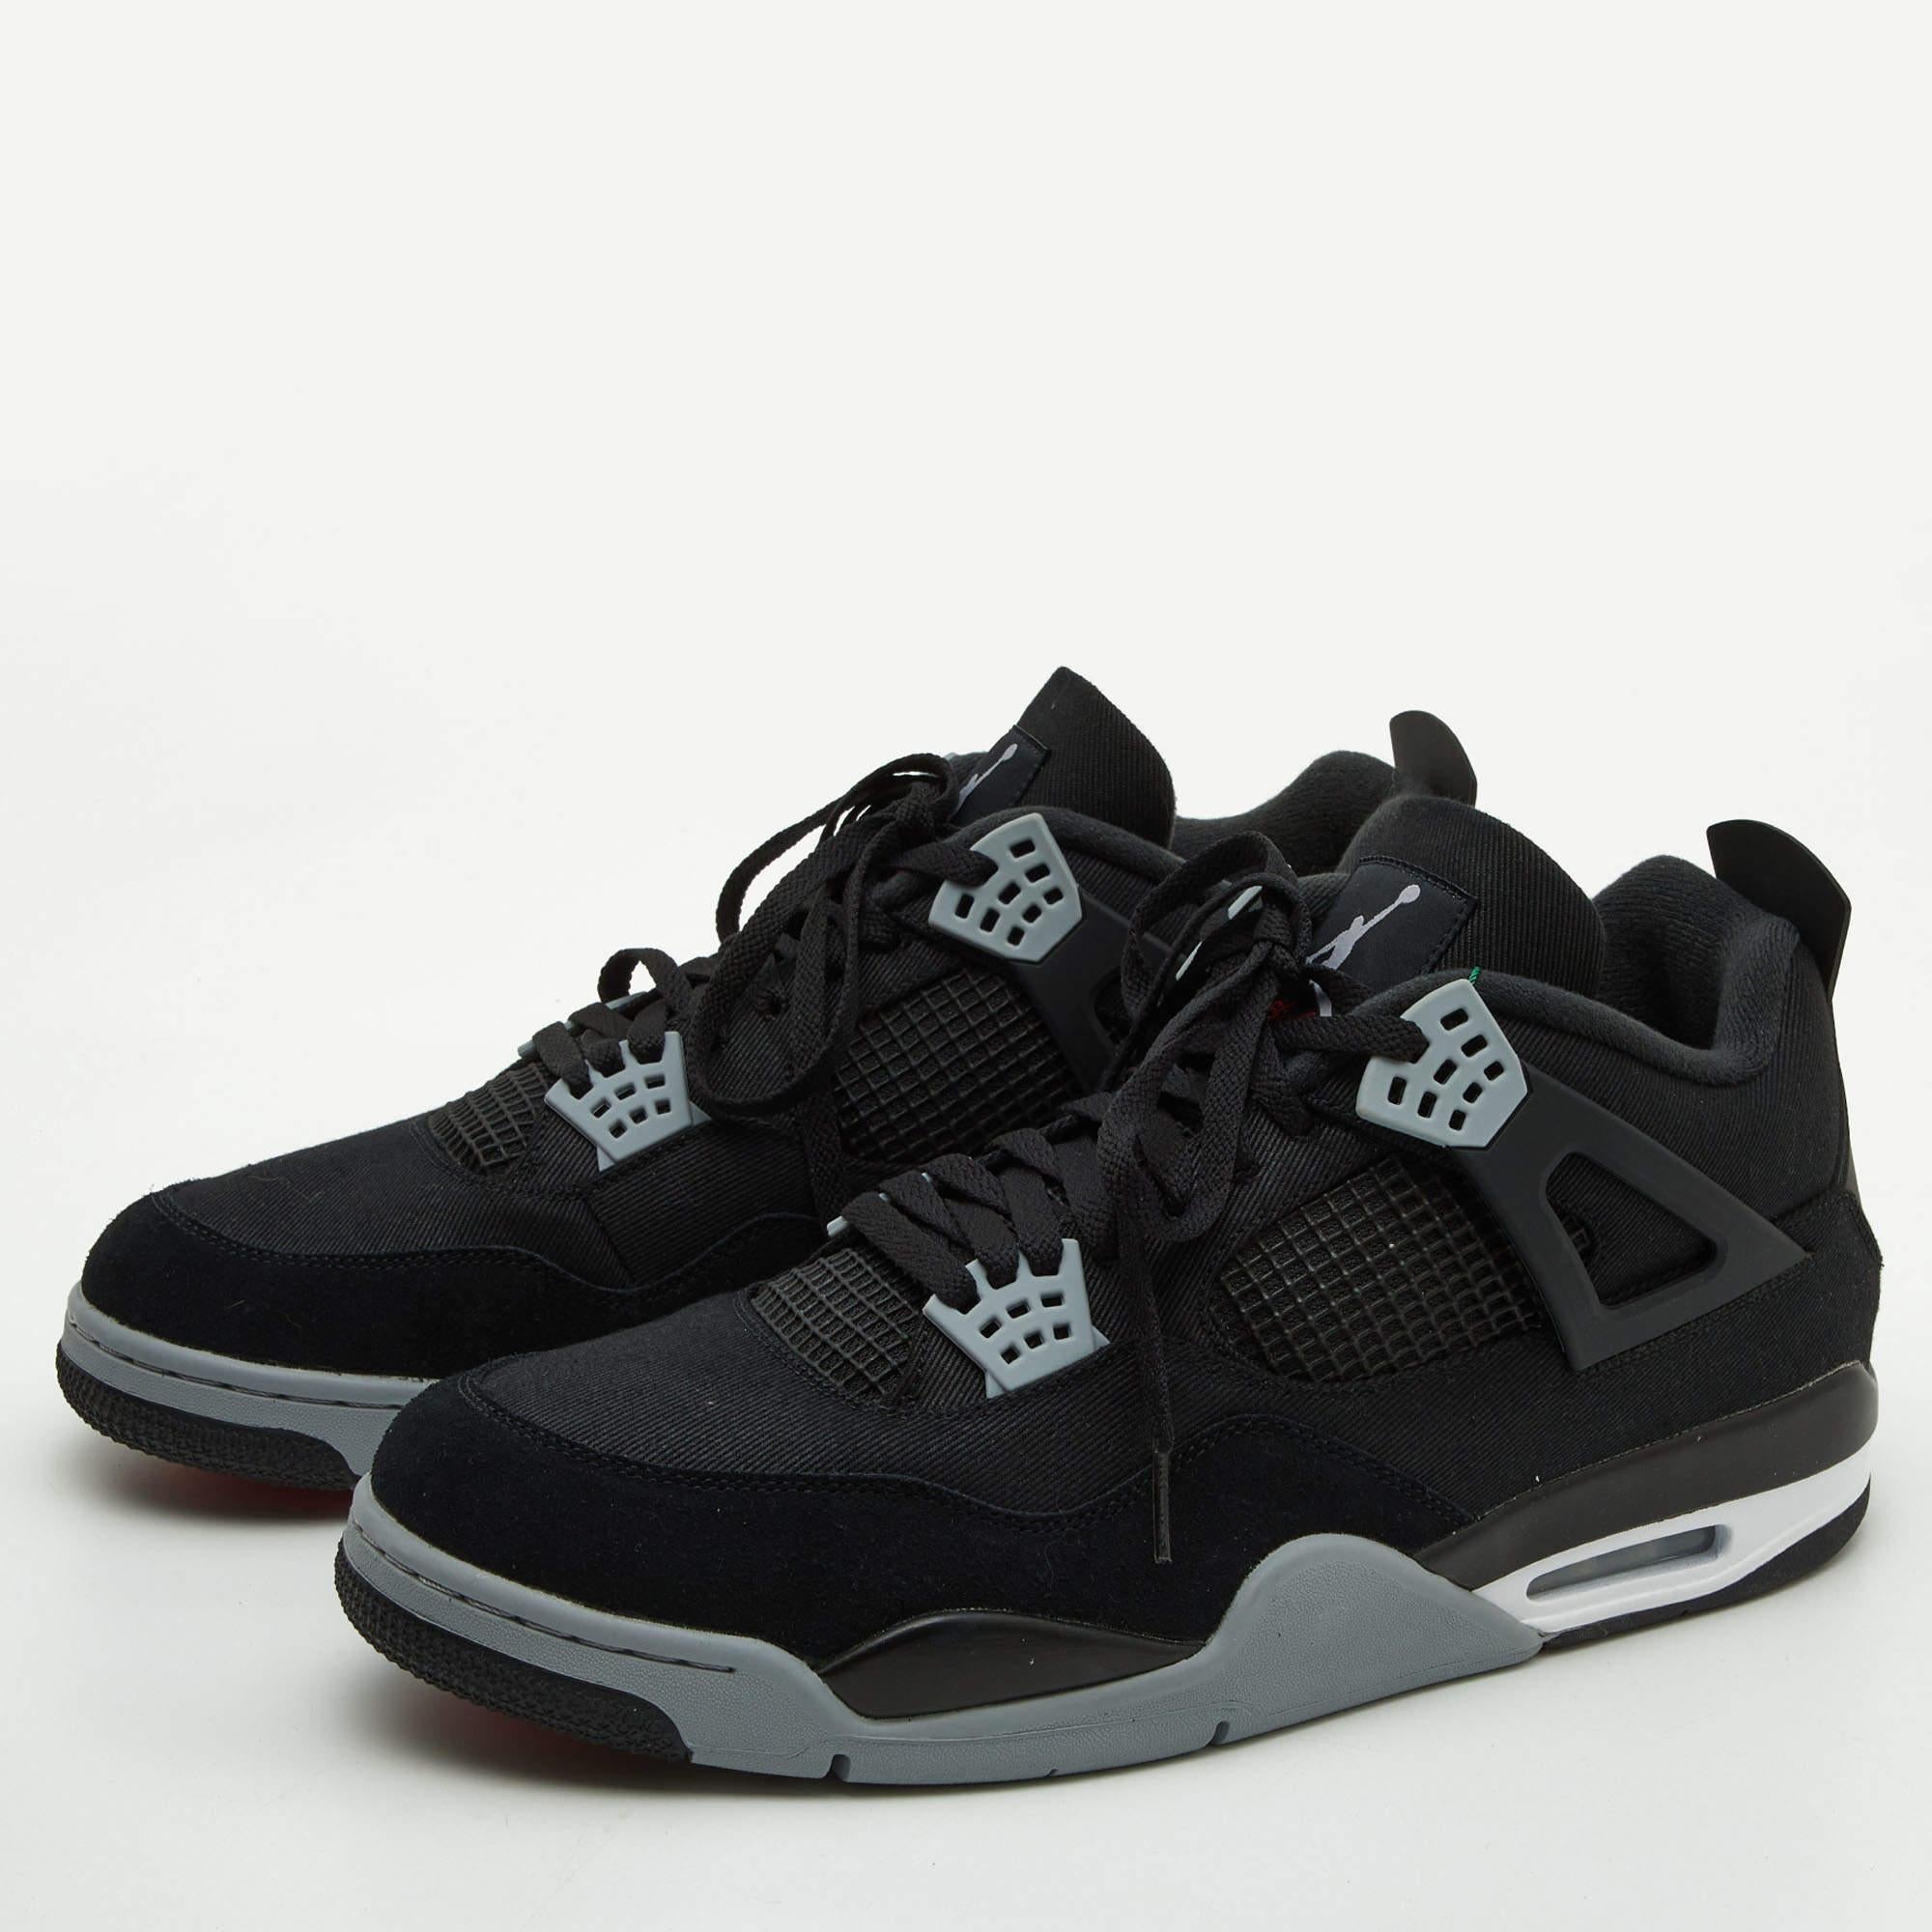 Men's Air Jordans Black Canvas and Suede Jordan 4 Retro Sneakers Size 50.5